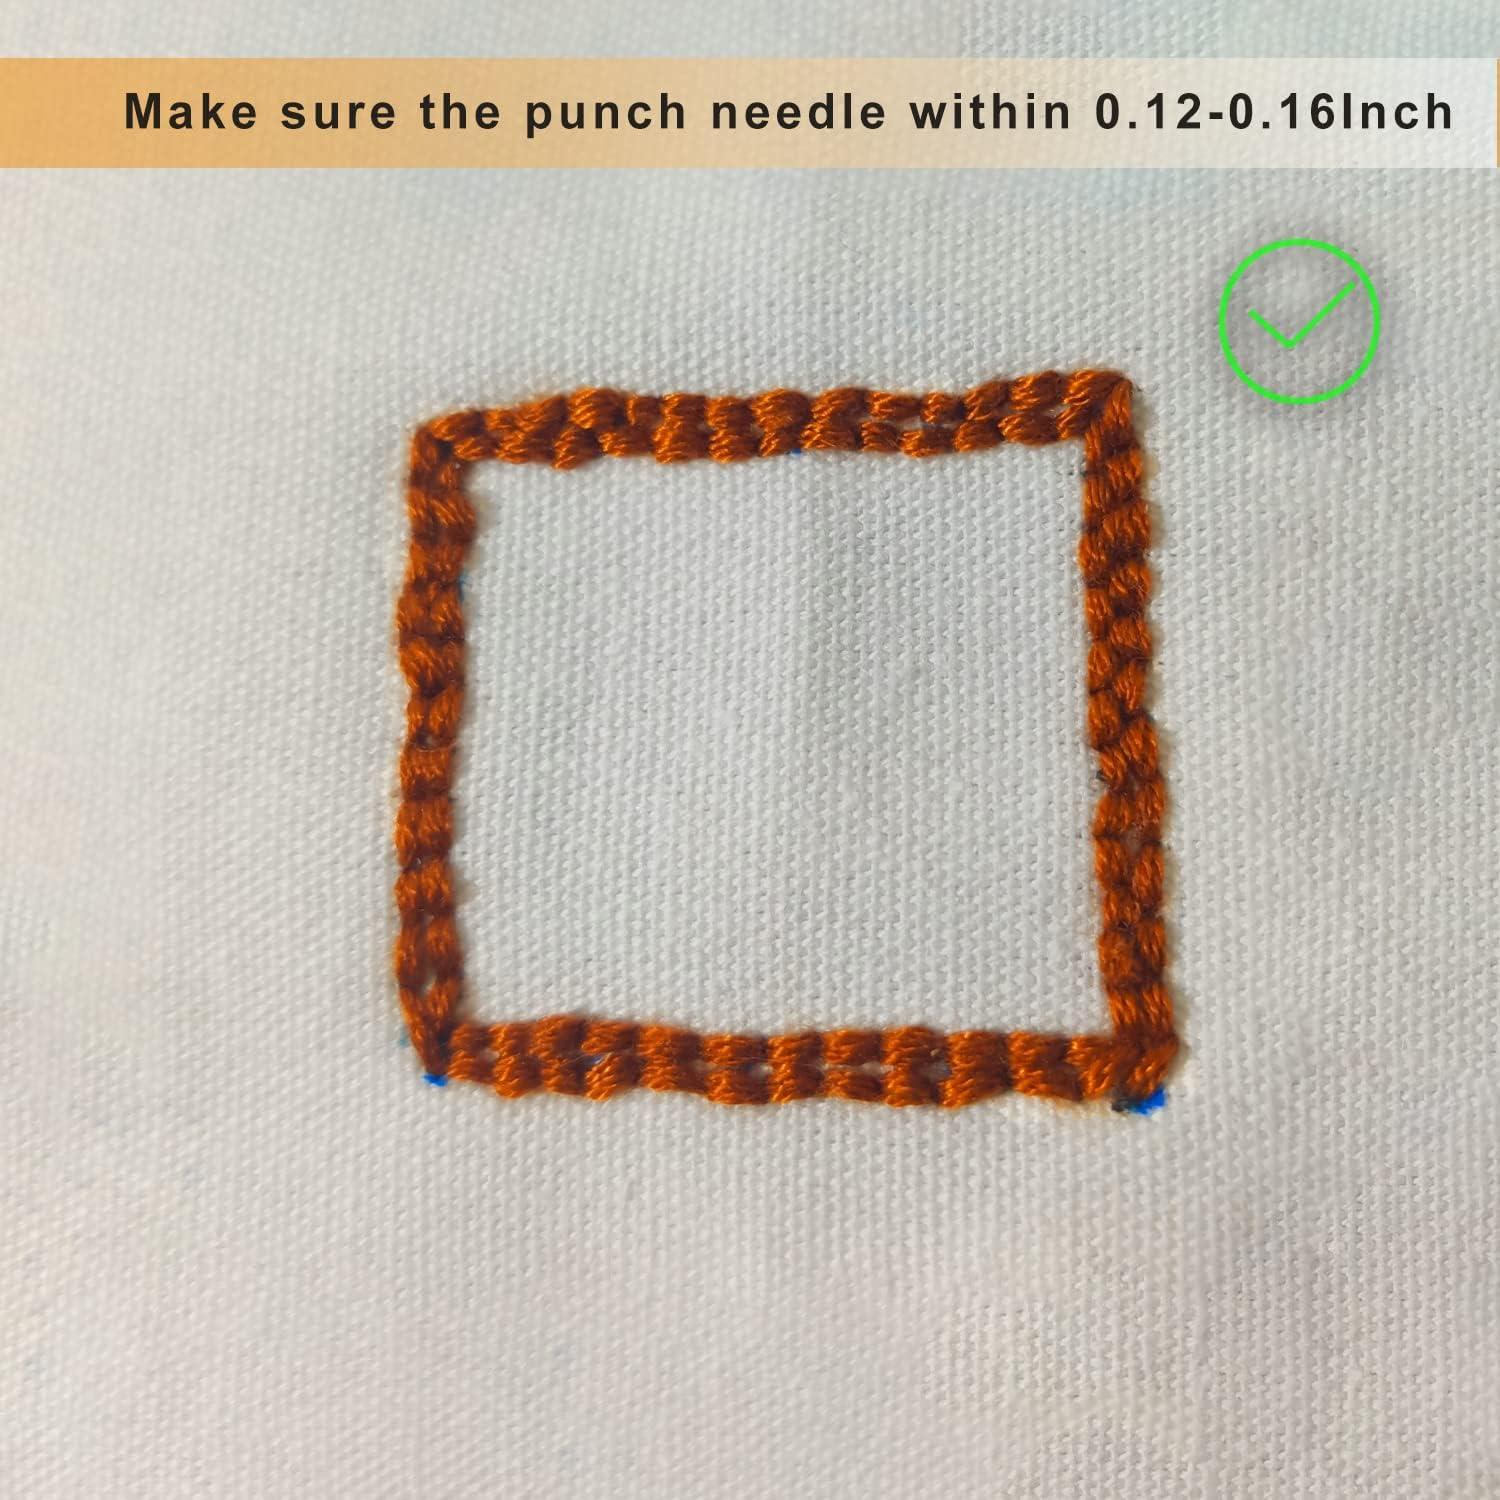 Punch Needle Kit,Punch Needle Kits Adults Beginner,Punch Needle